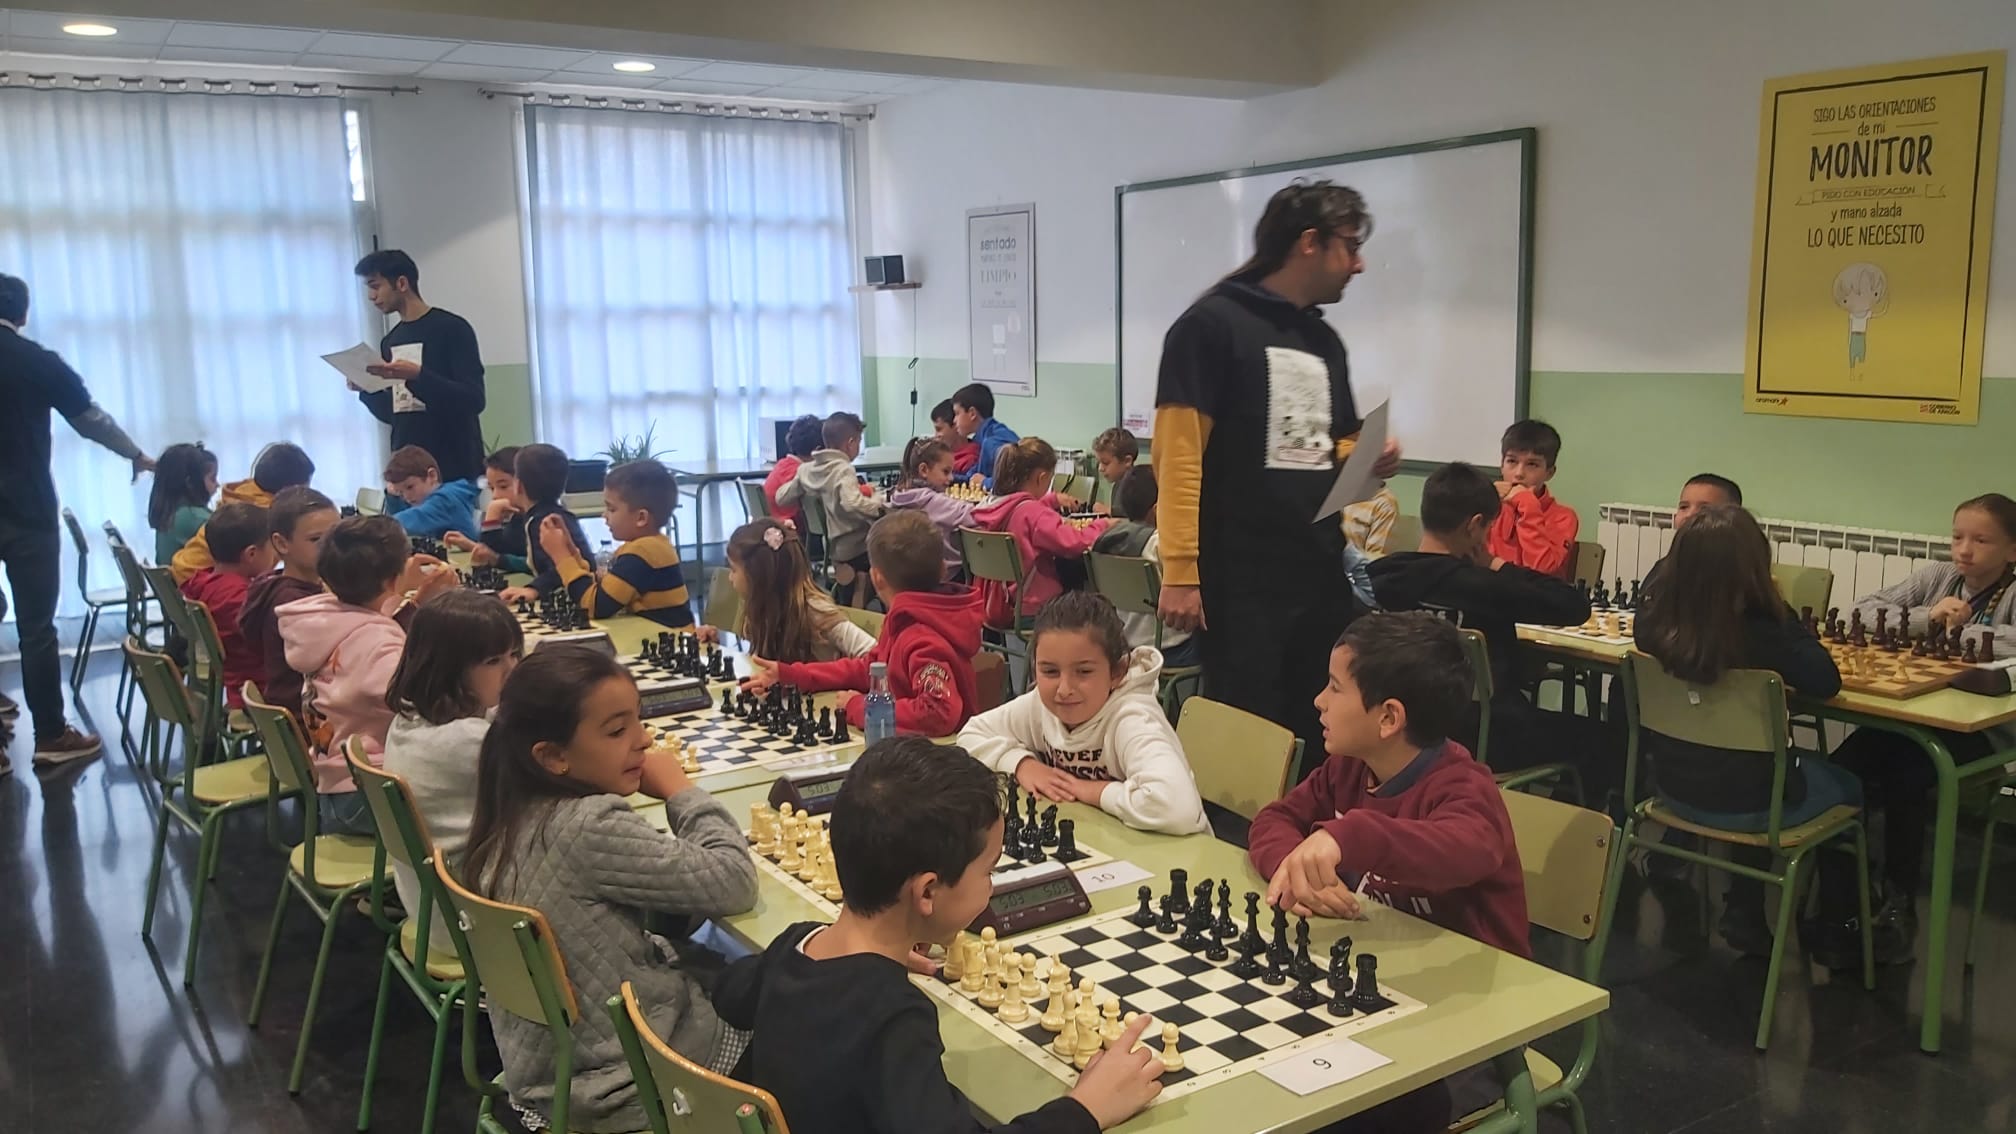 Agrupación artística aragonesa ajedrez